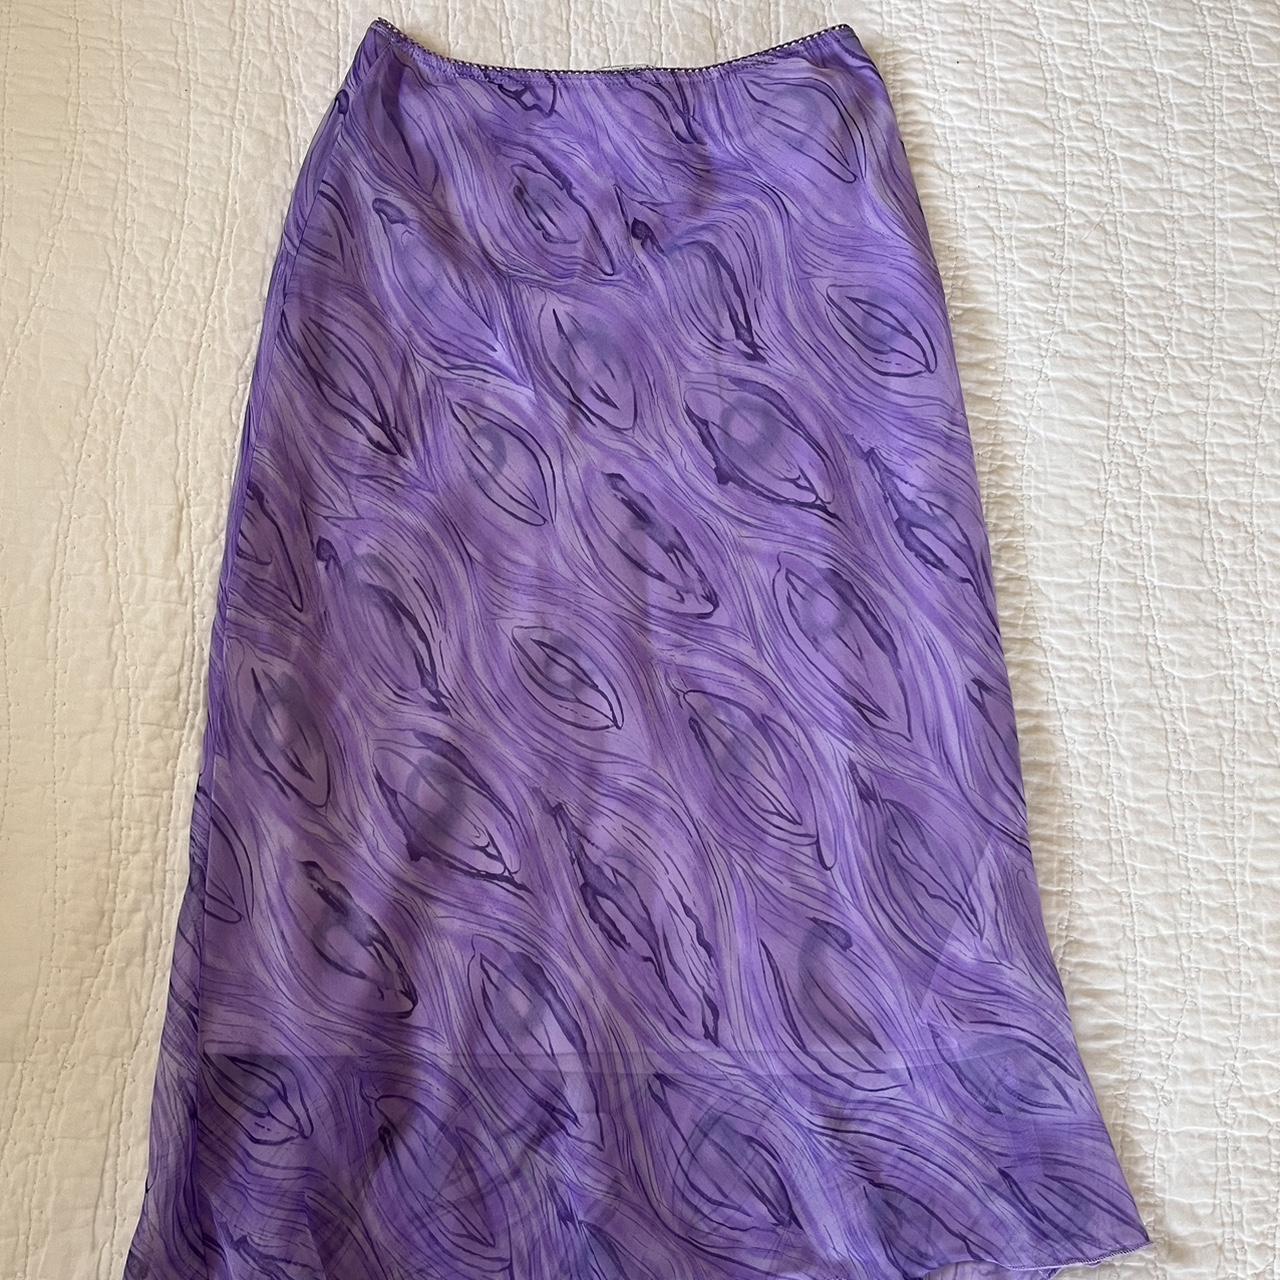 Vintage La Belle Purple Mesh Midi Skirt perfect... - Depop